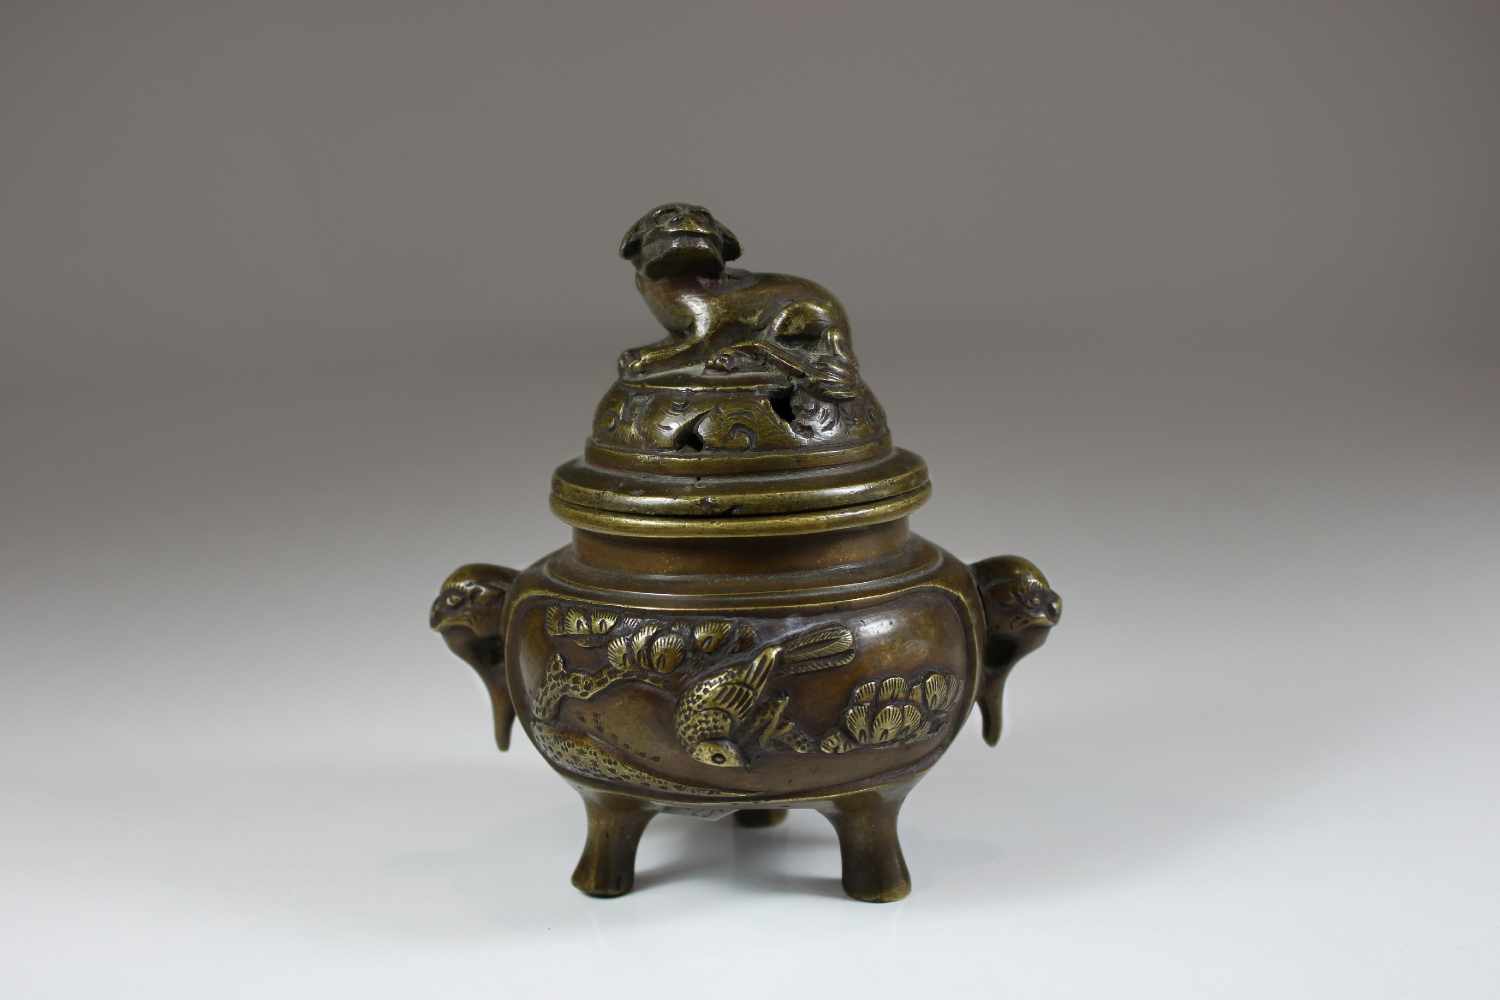 Kleines Räuchergefäß, China 19. Jh., Bronze, mit Handhaben und Vogelrelief, bekrönt durch Fo-Hund,